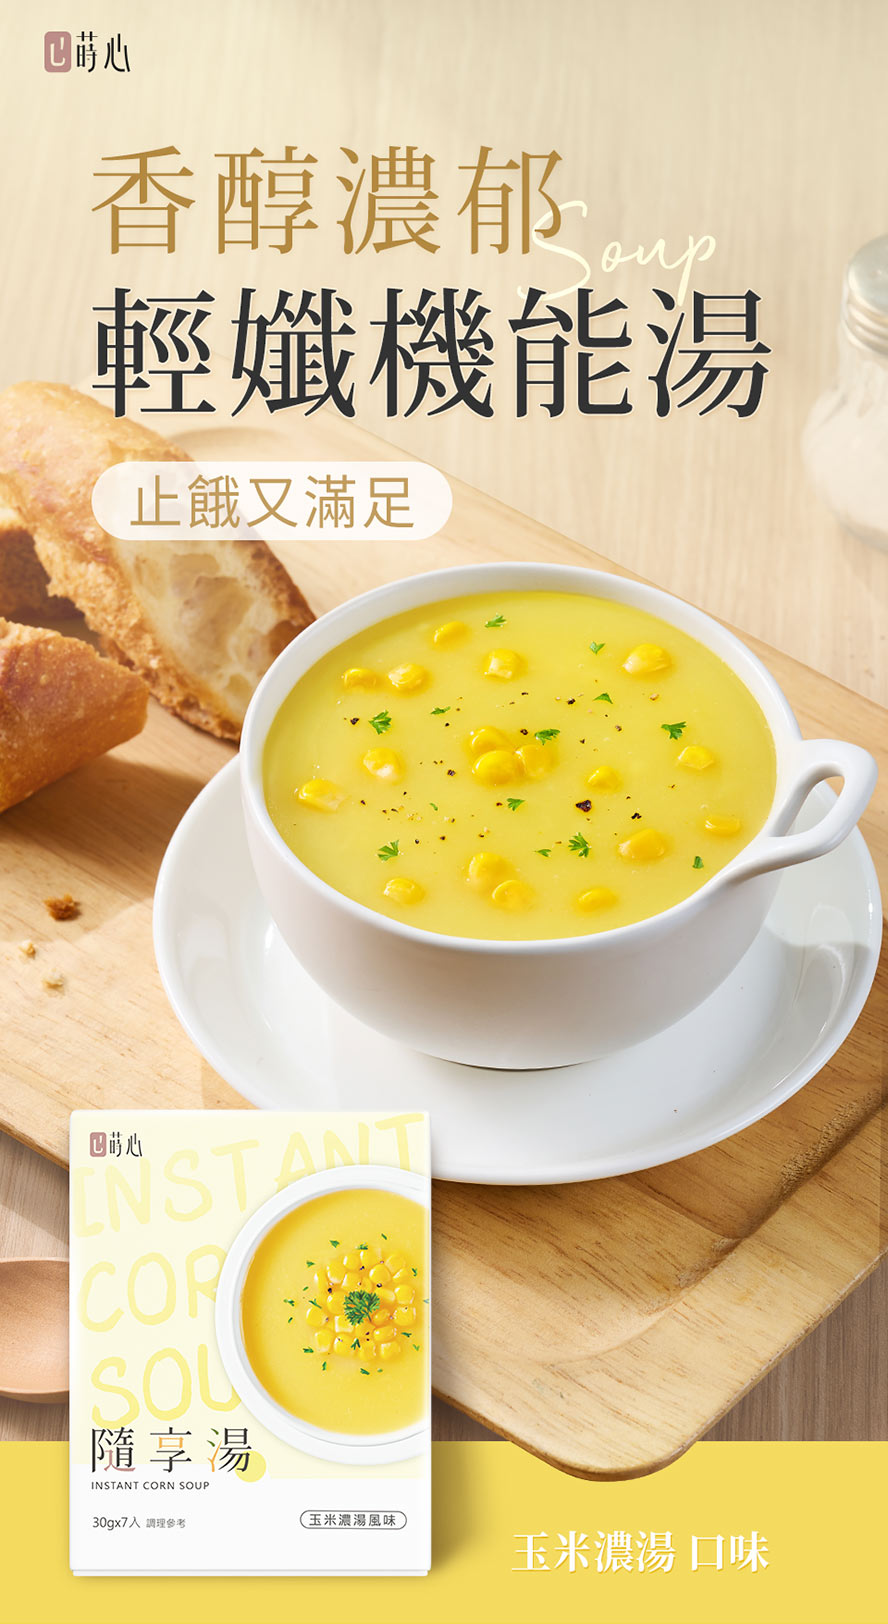 蒔心隨享湯玉米濃湯口味介紹。